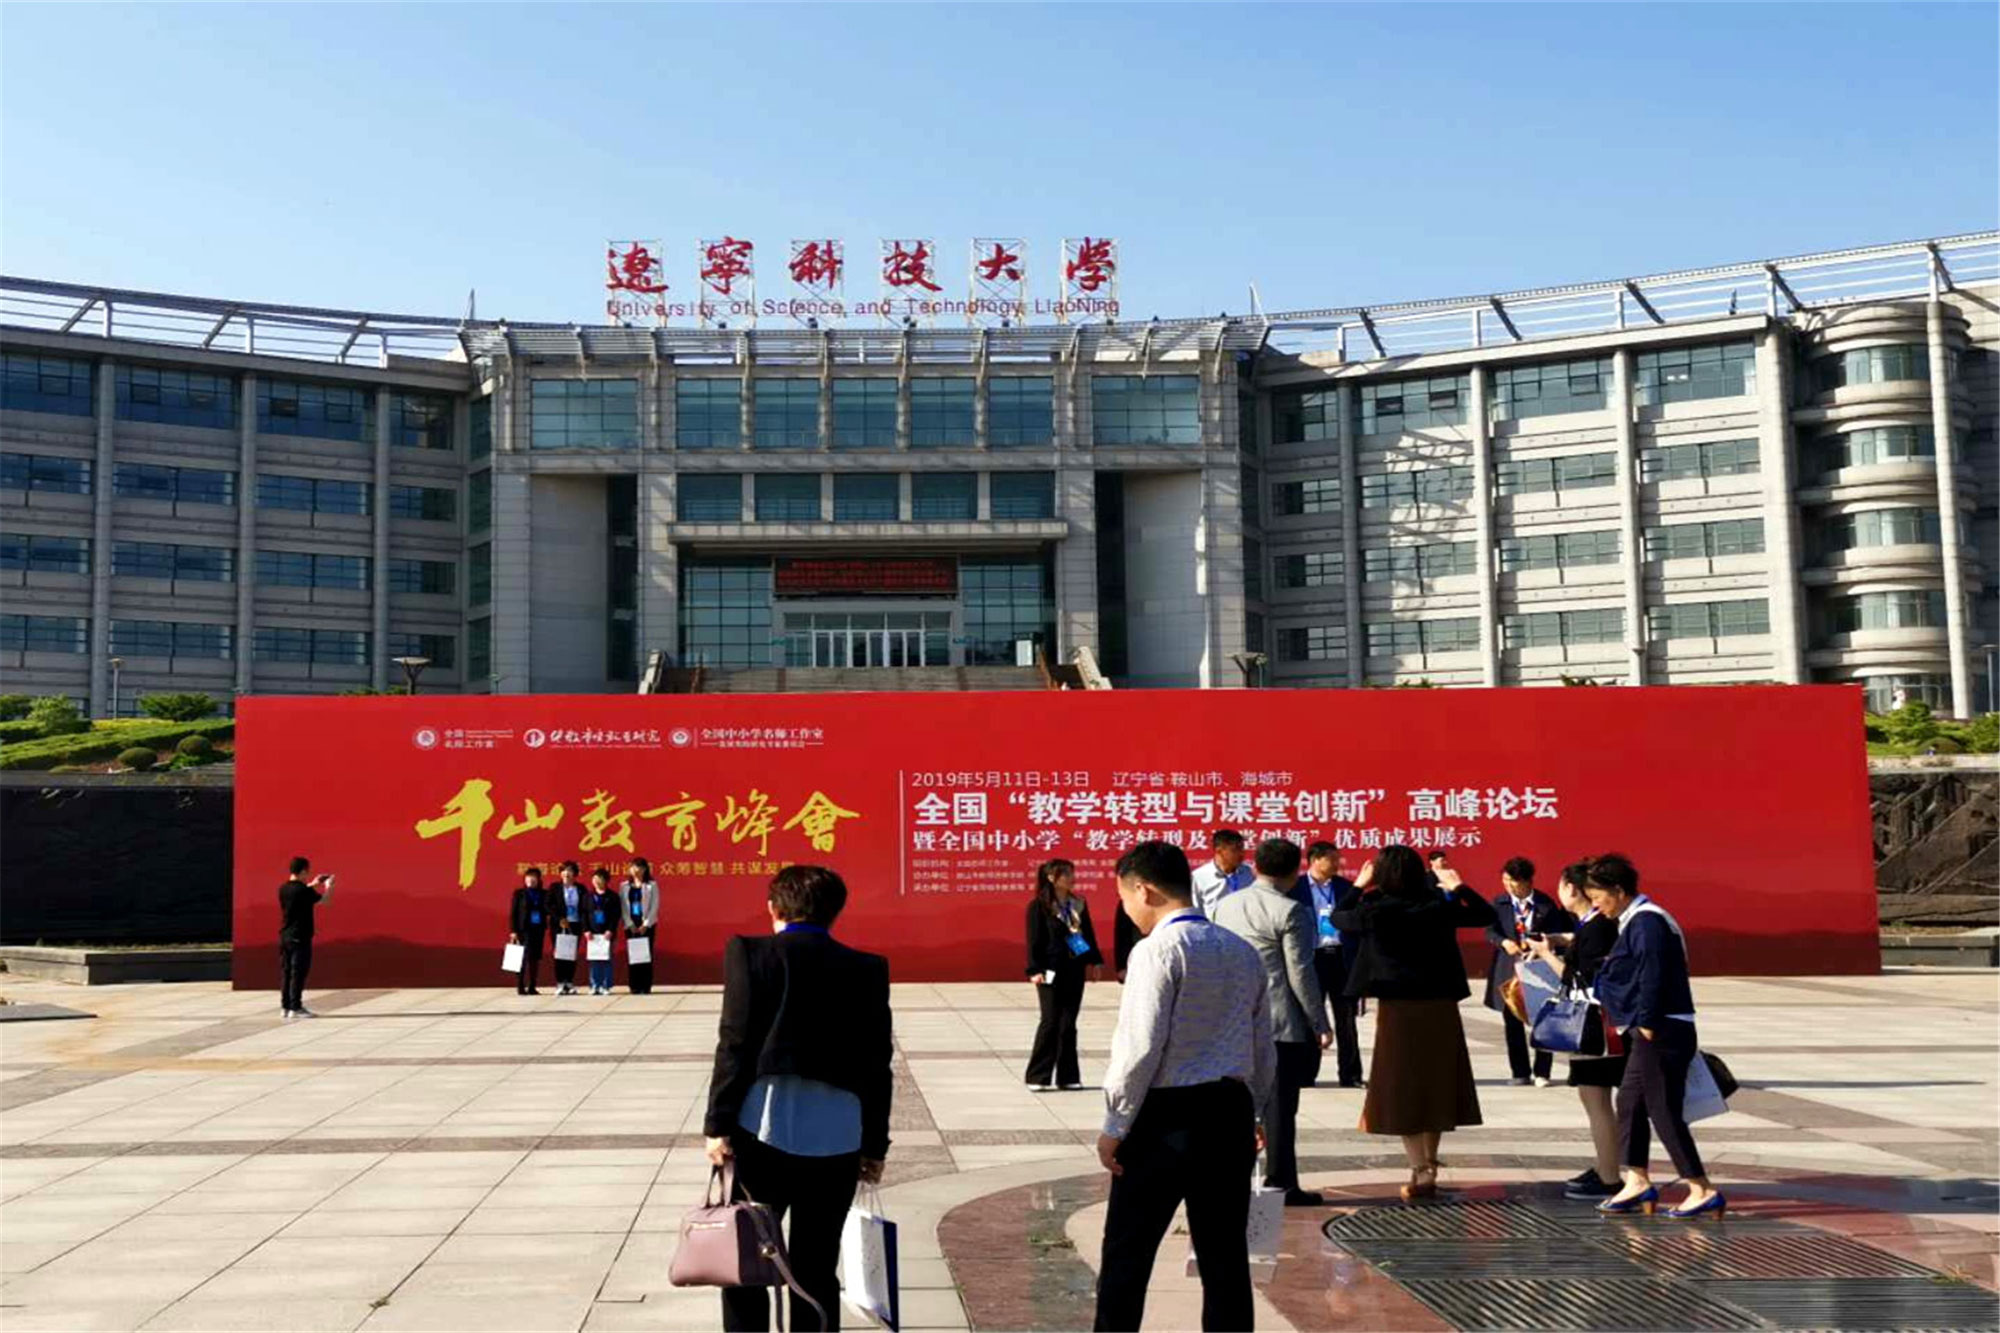 本次活动由北京中教市培教育研究院、鞍山市教育局举办、海城市教育局承办。